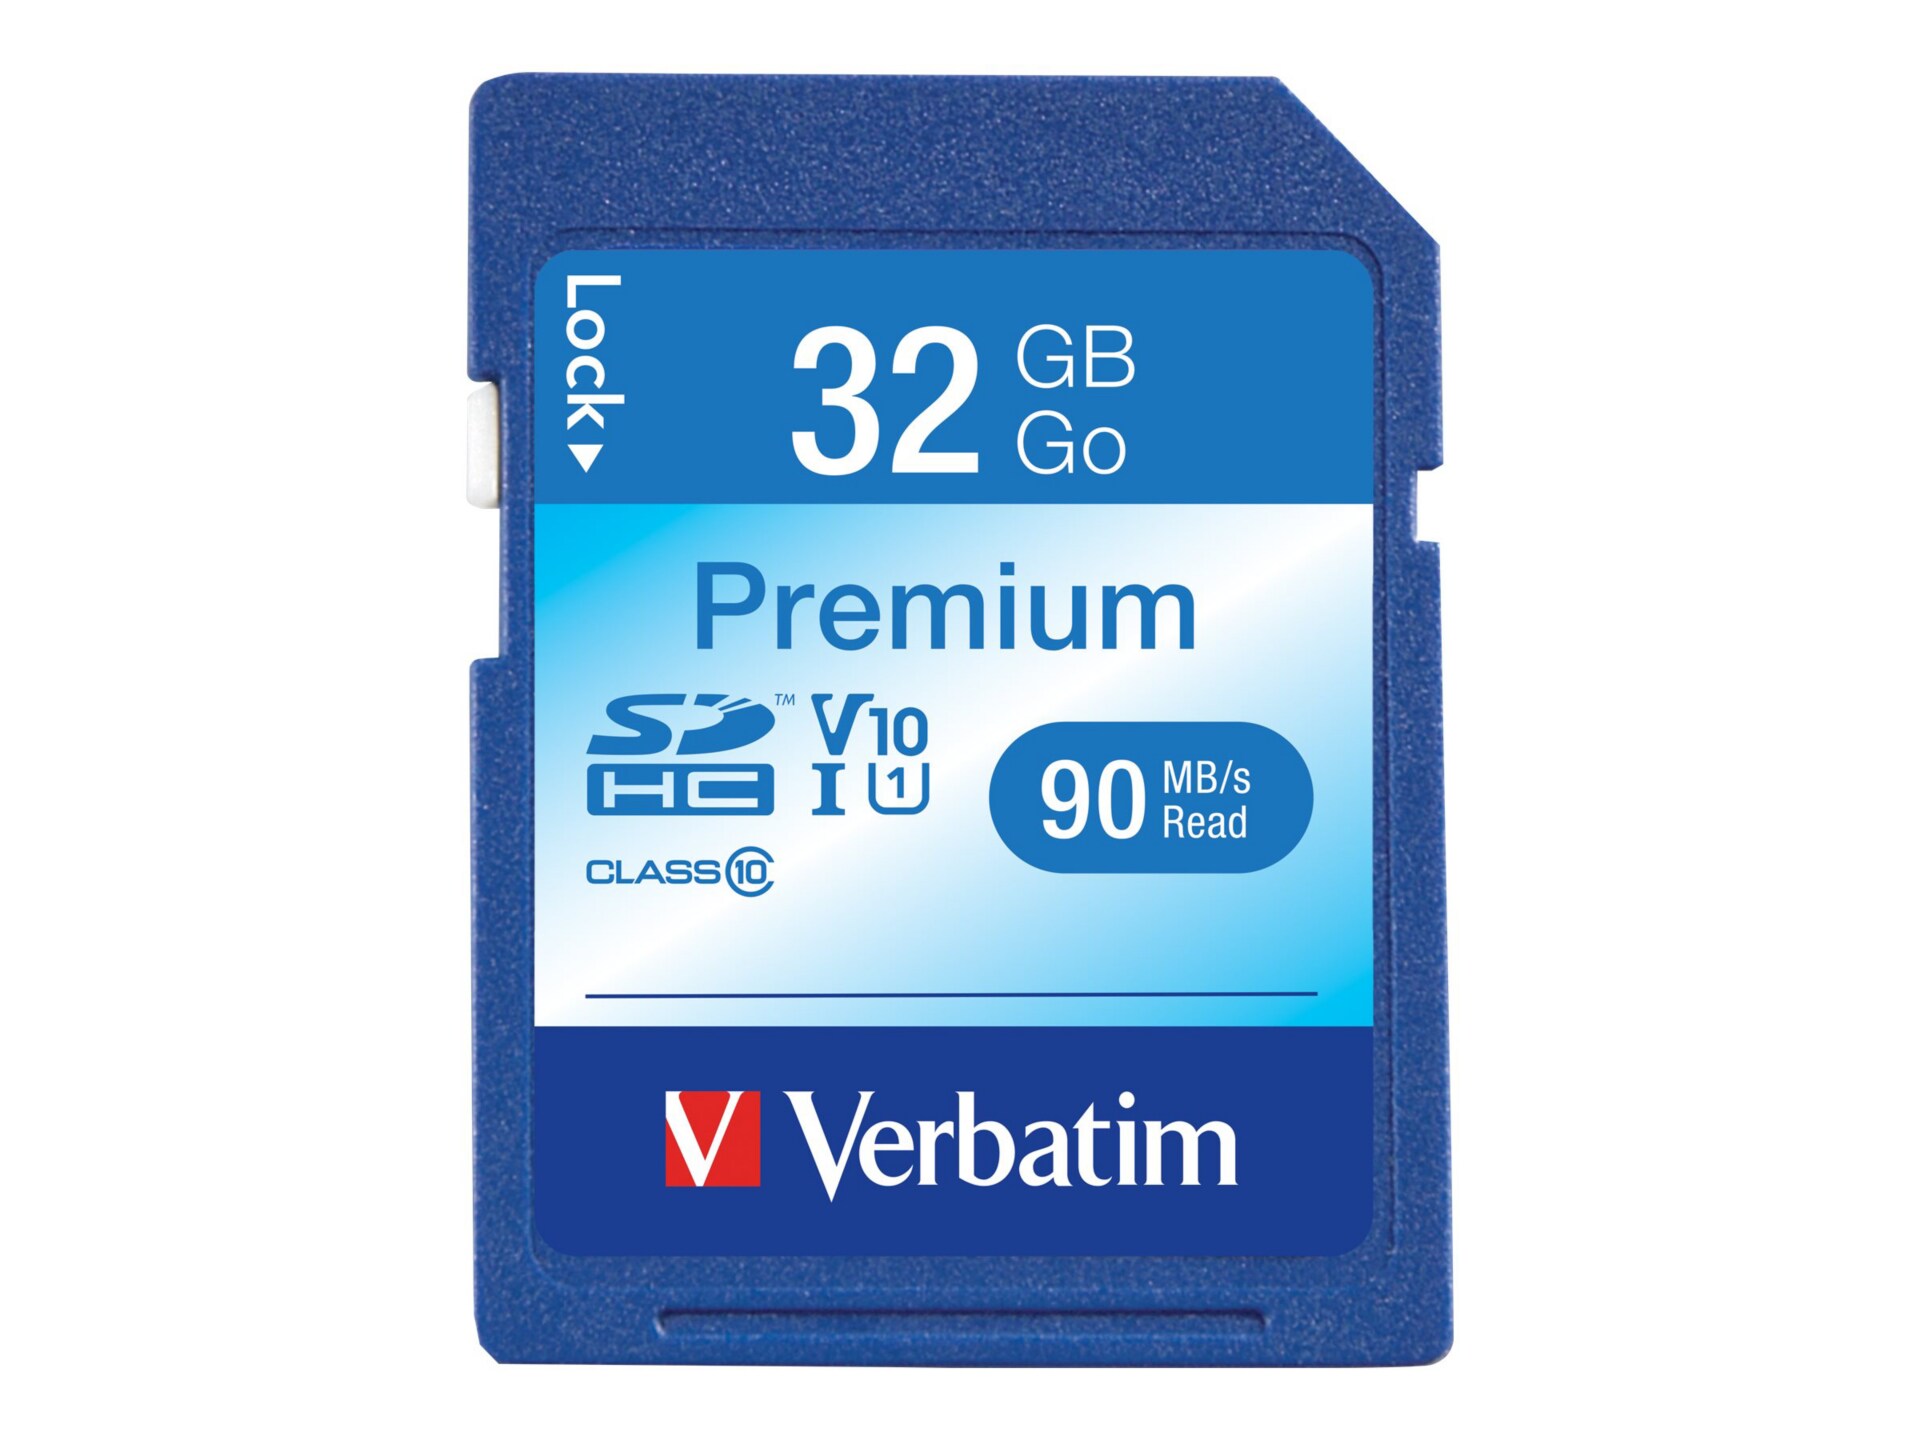 Verbatim Premium - flash memory card - 32 GB - SDHC UHS-I